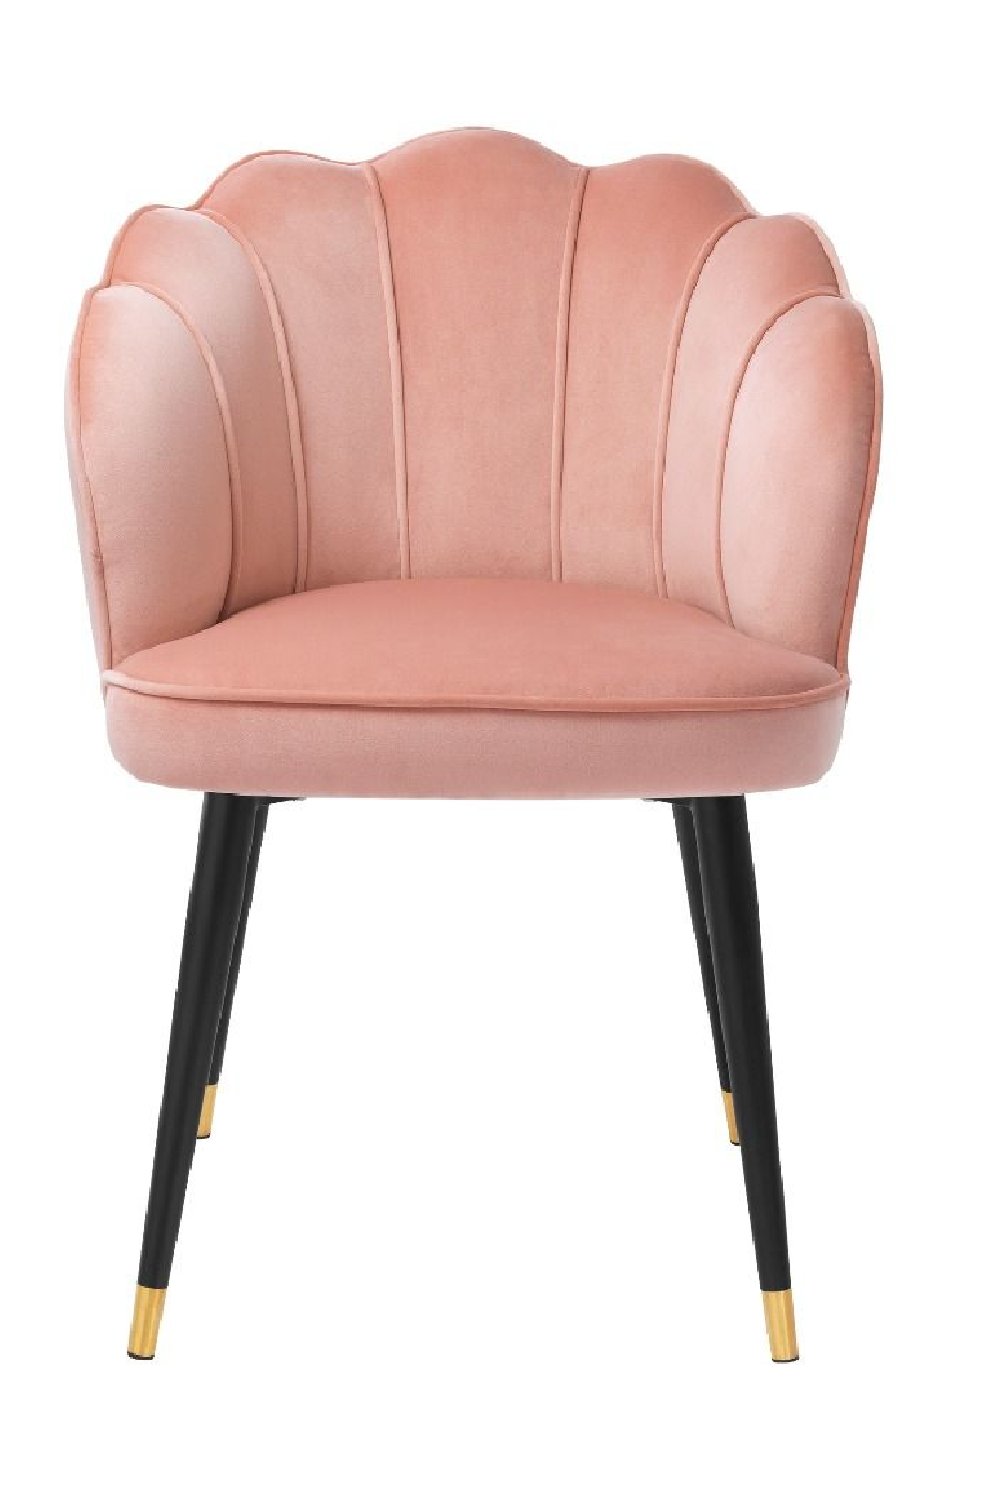 Blush Scalloped Dining Chair | Eichholtz Bristol